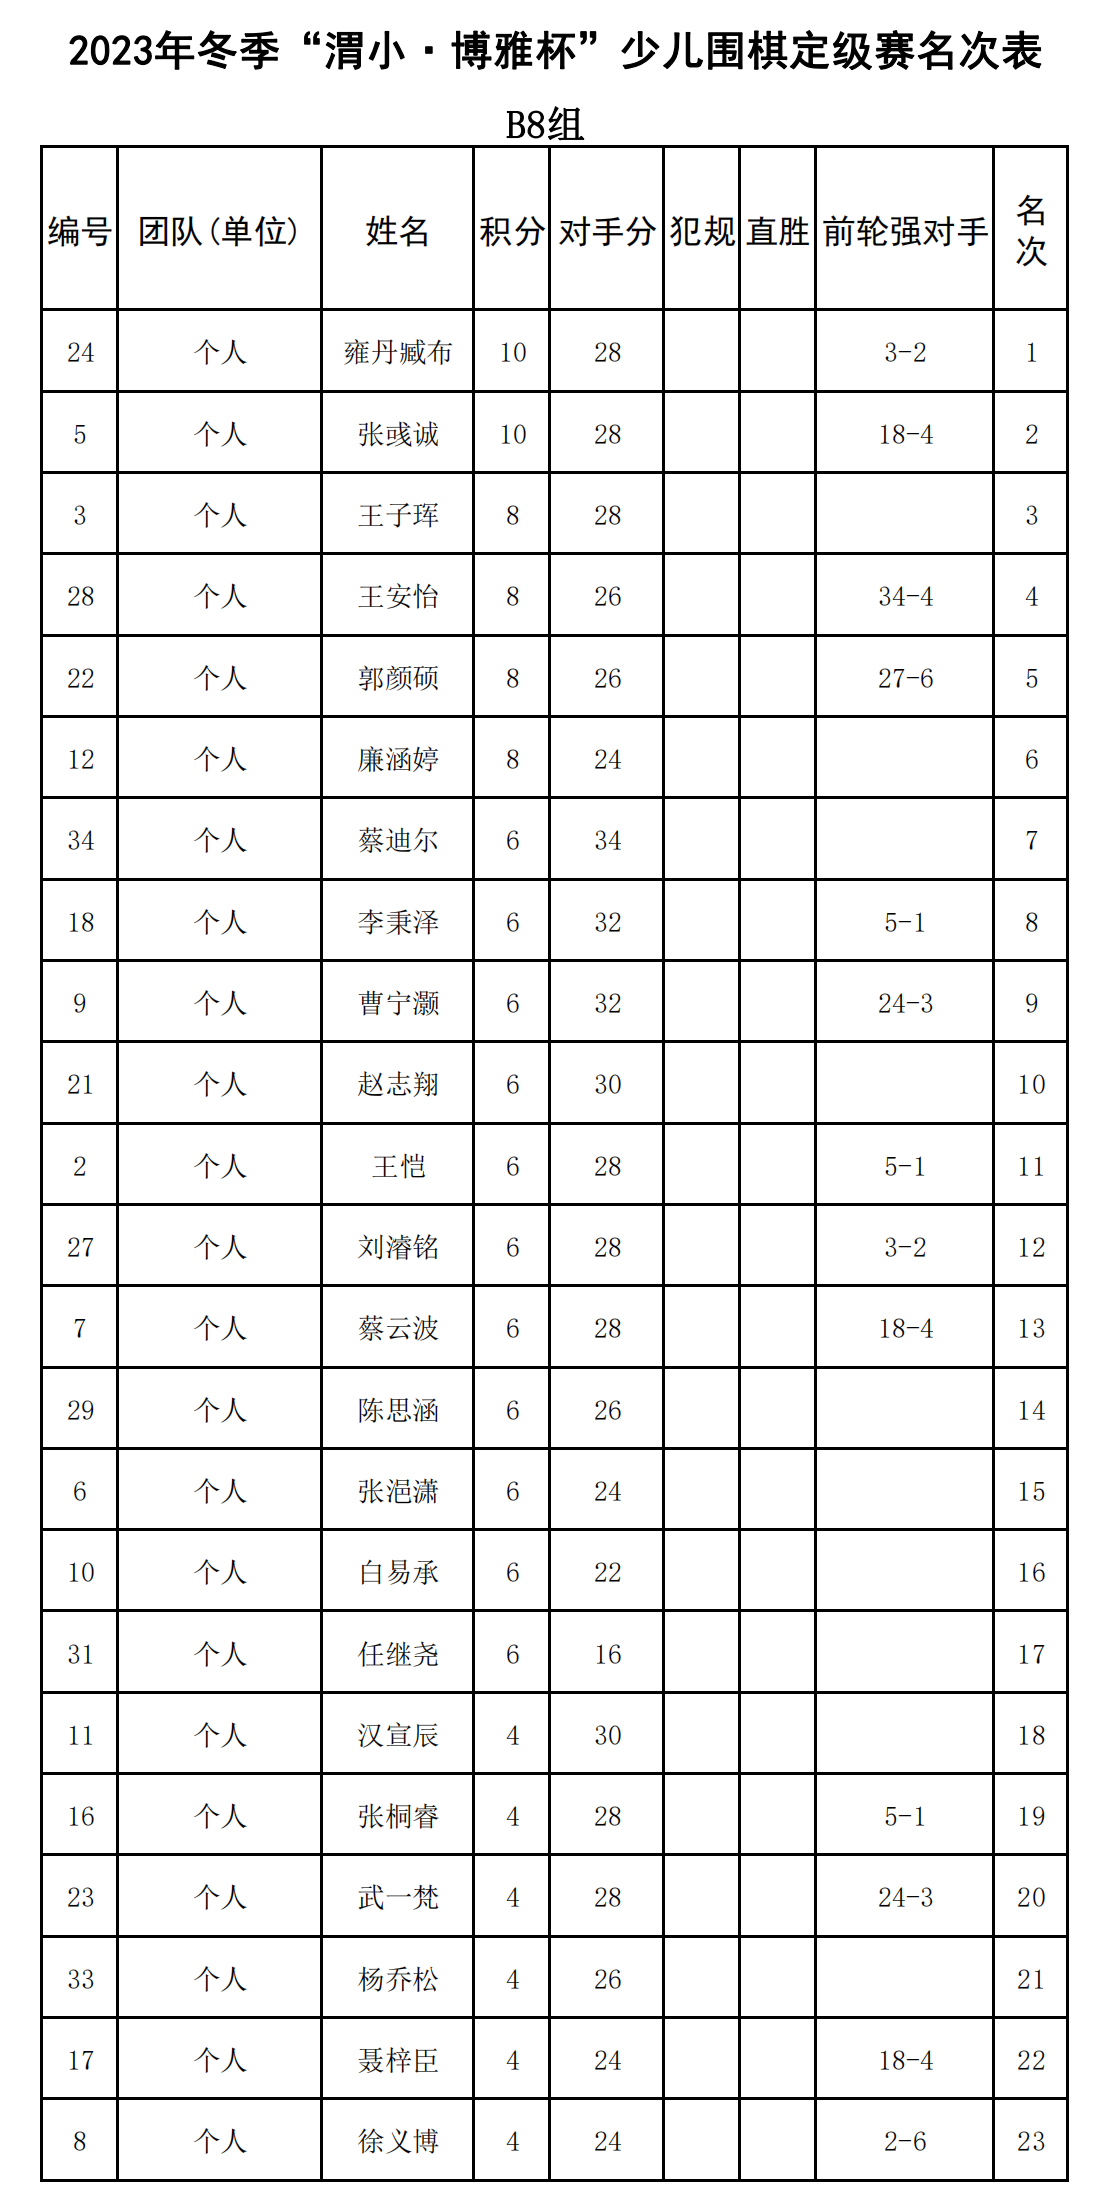 2023年冬季“渭小·博雅杯”少儿围棋定级赛B8组(名次表)_00.png